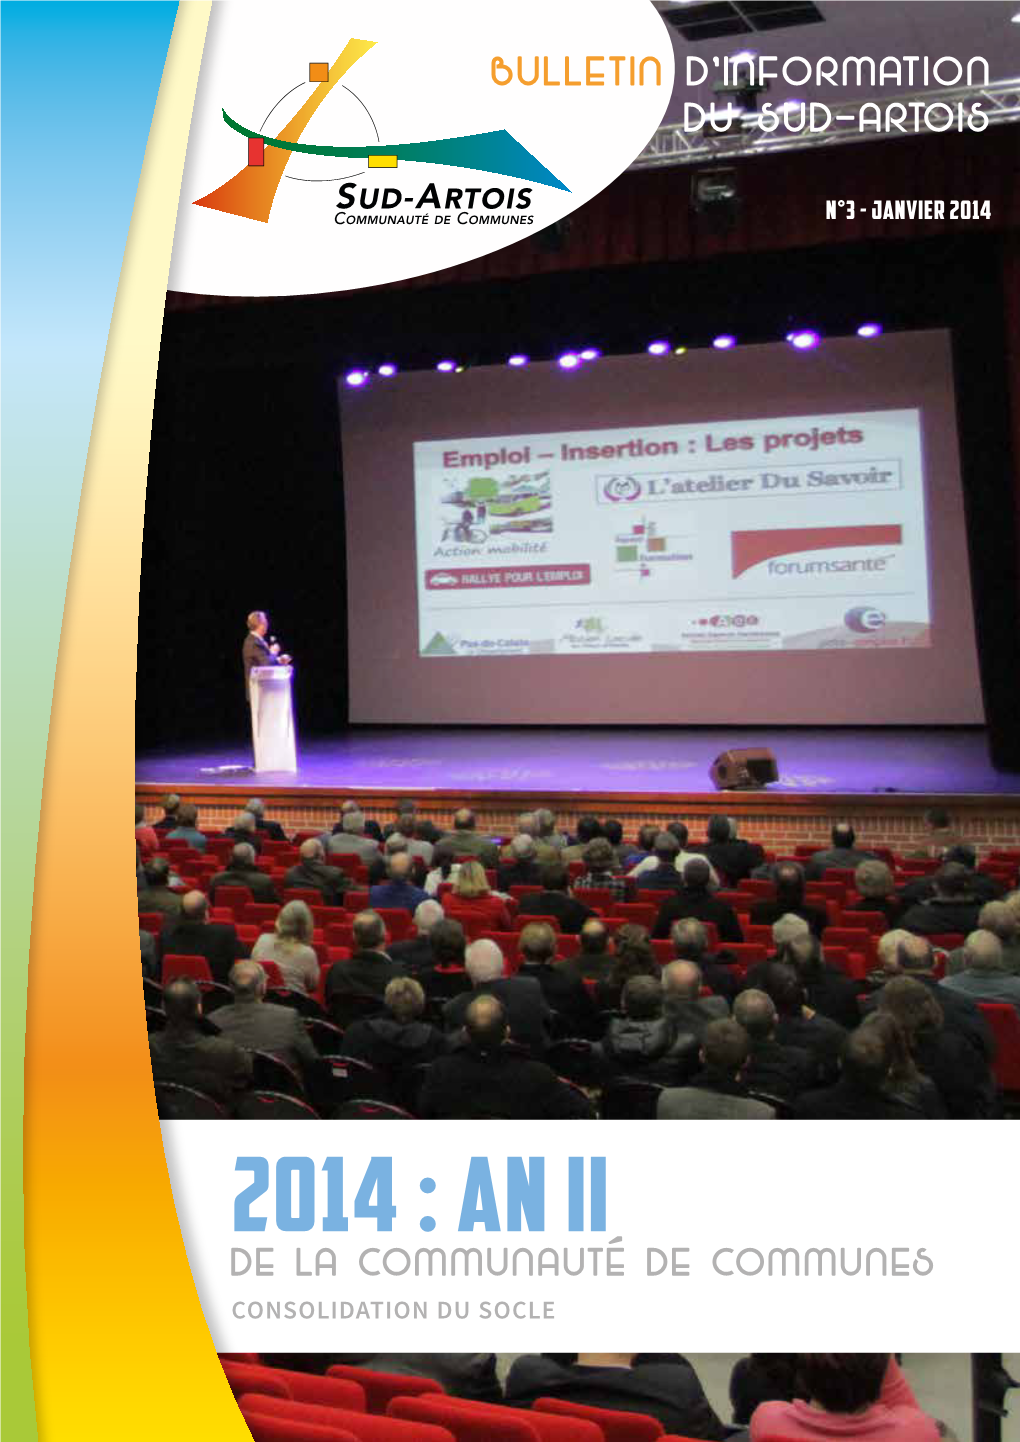 2014 : an Ii De La Communauté De Communes Consolidation Du Socle